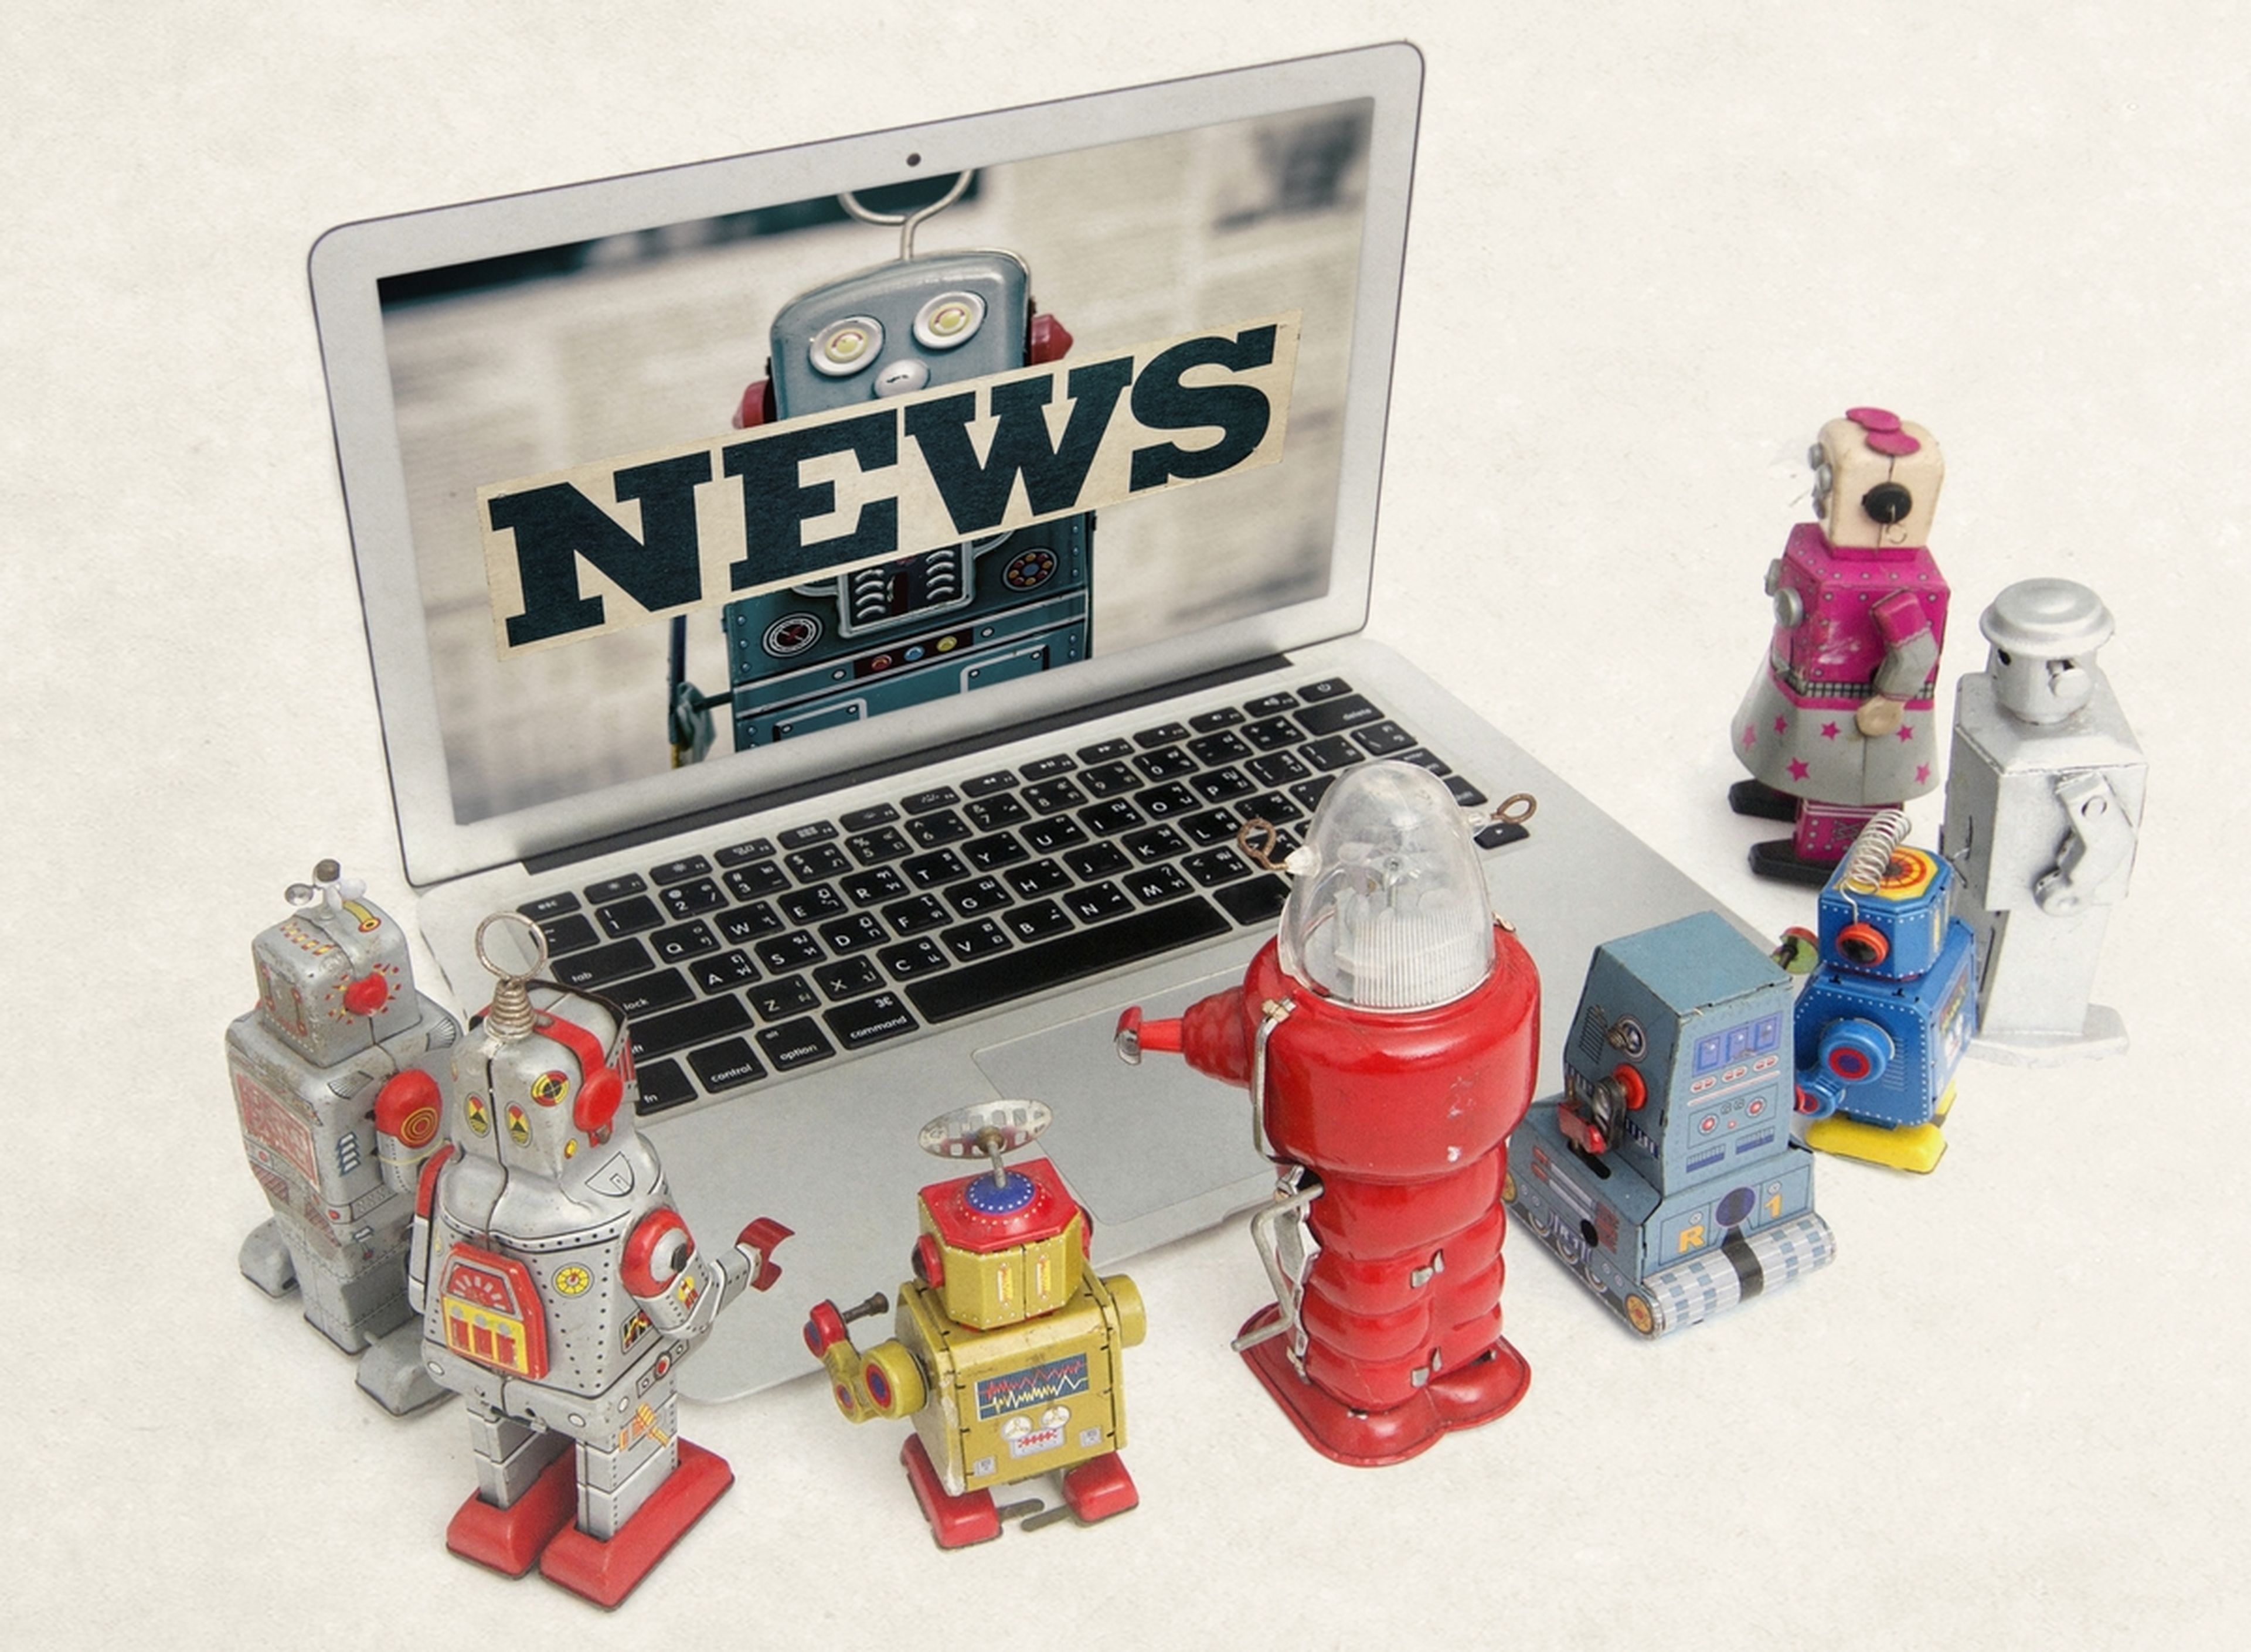 Microsoft sustituirá a 50 periodistas de su web por robots